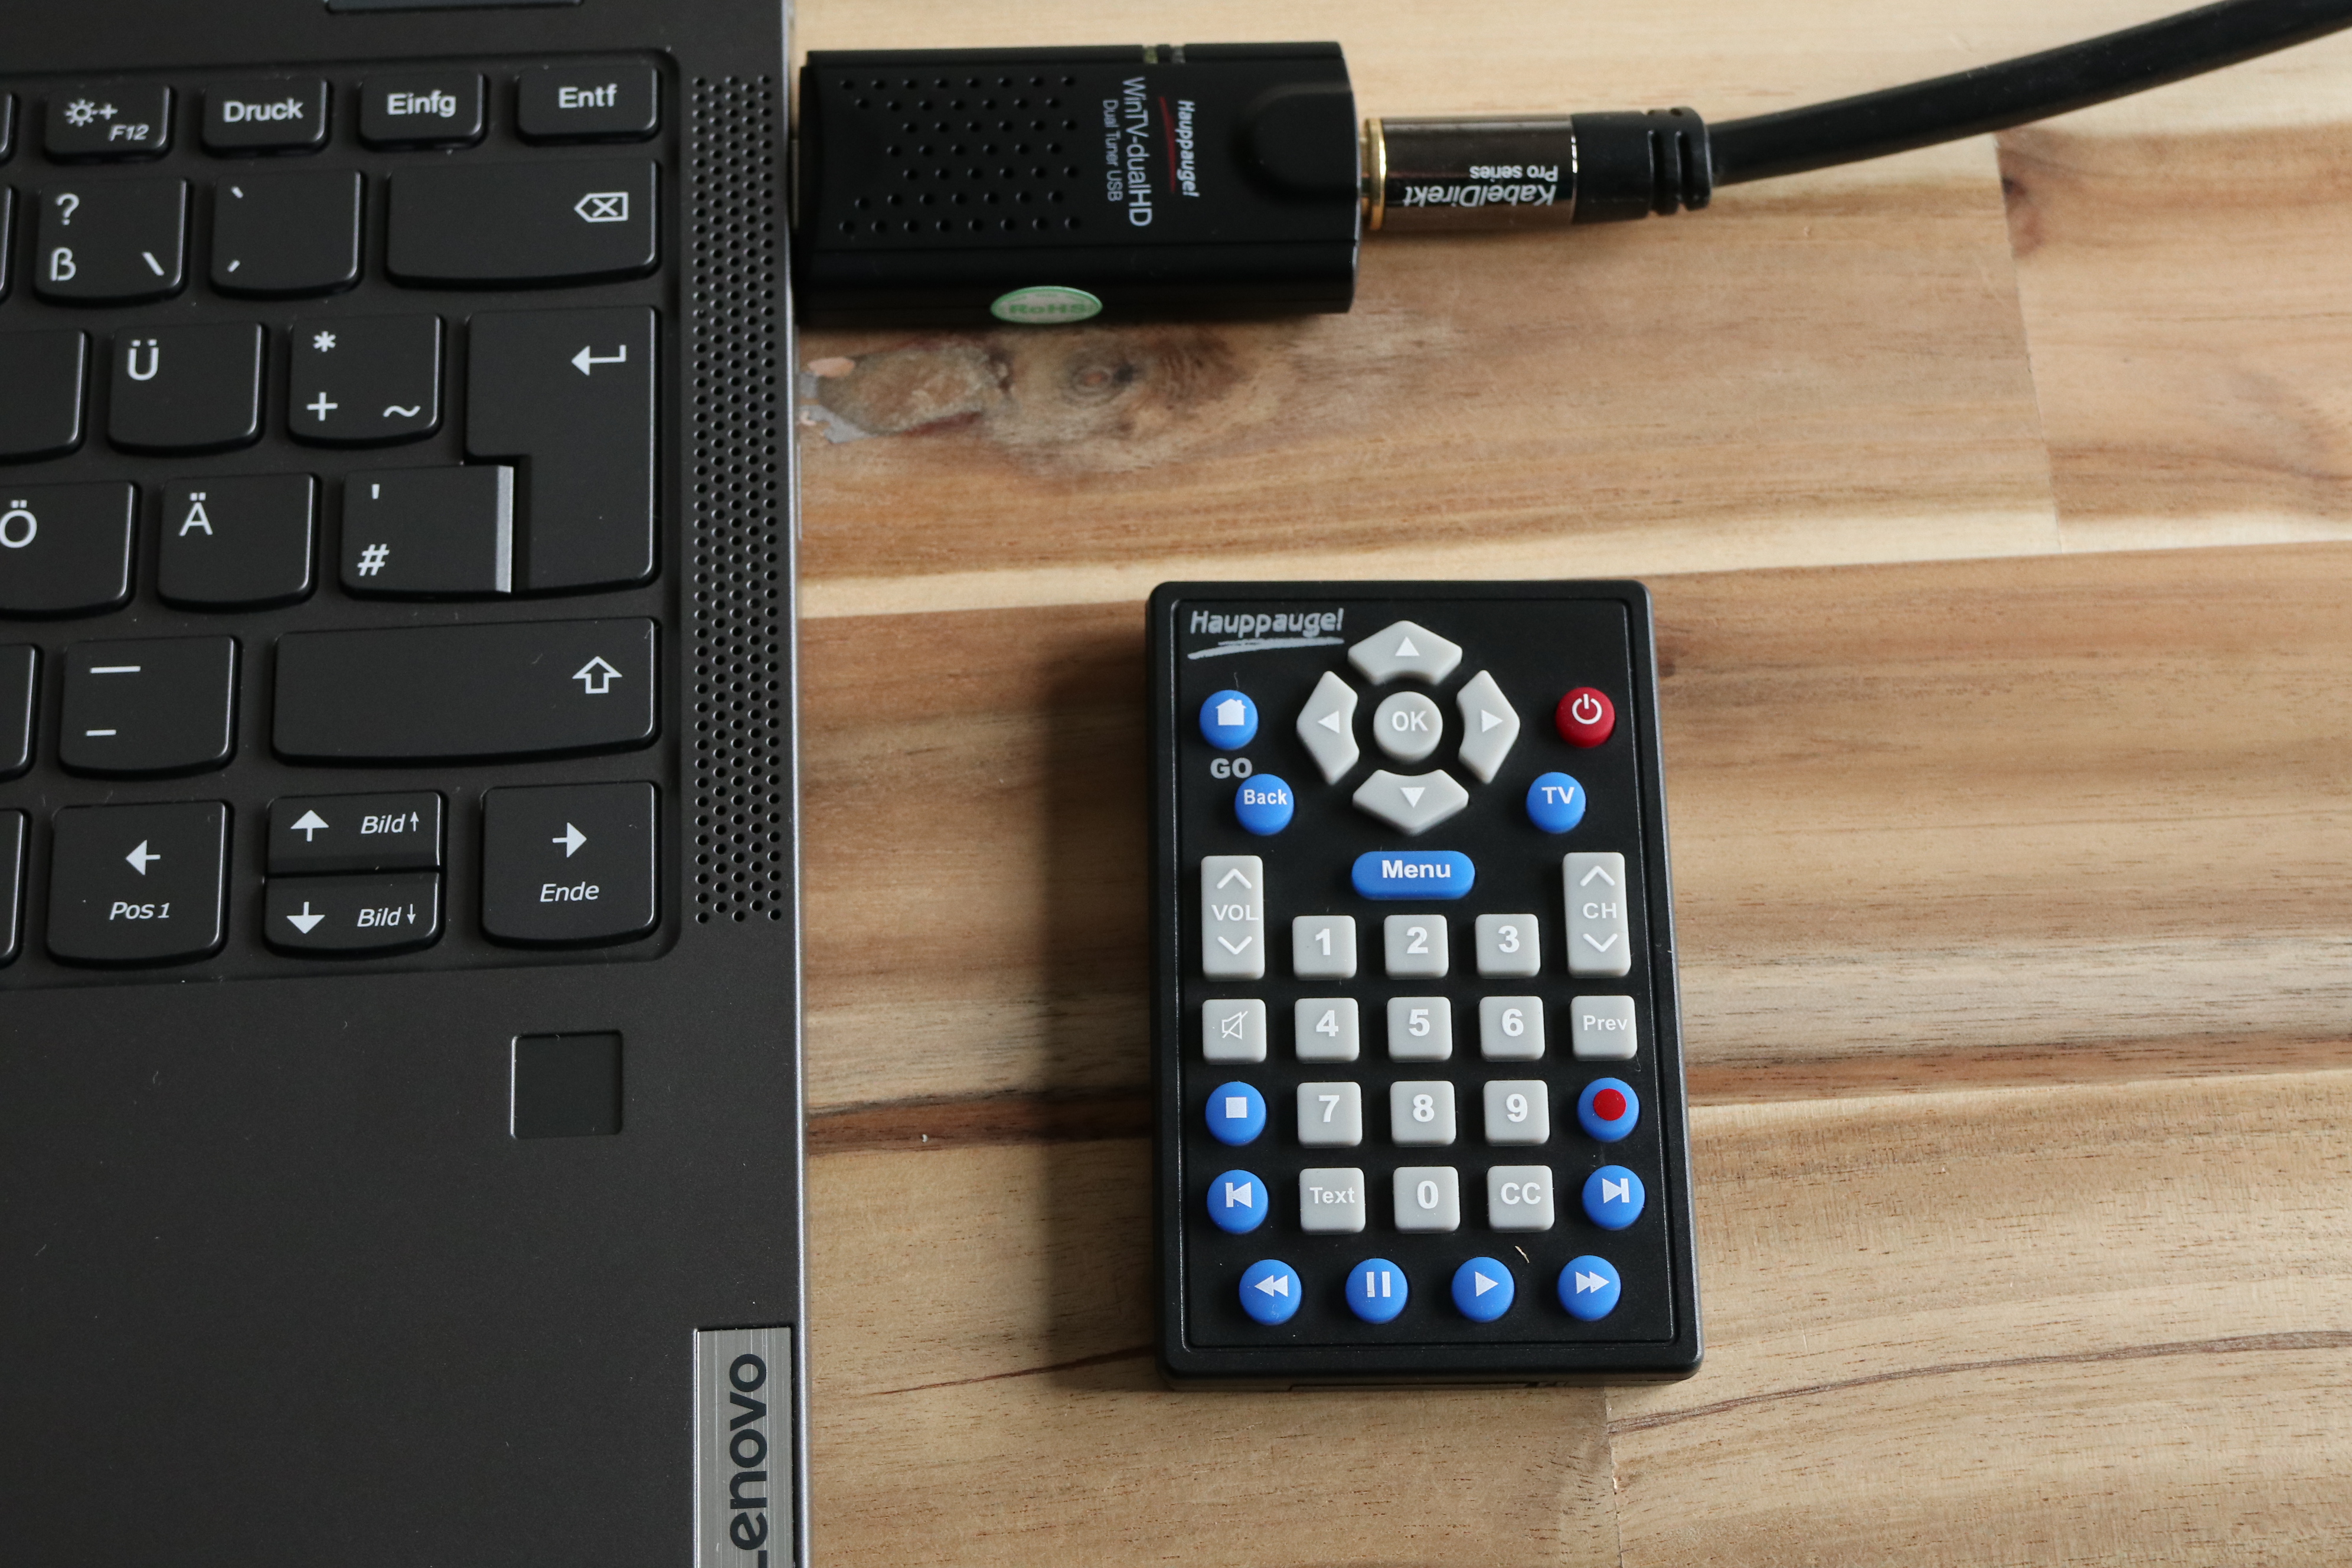 Einfaches Setup: TV-Stick über USB an ein Windows-Notebook angeschlossen, Kabel eingesteckt, Software installiert. Auch eine Fernbedienung gibt es bei vielen Paketen gleich dazu.